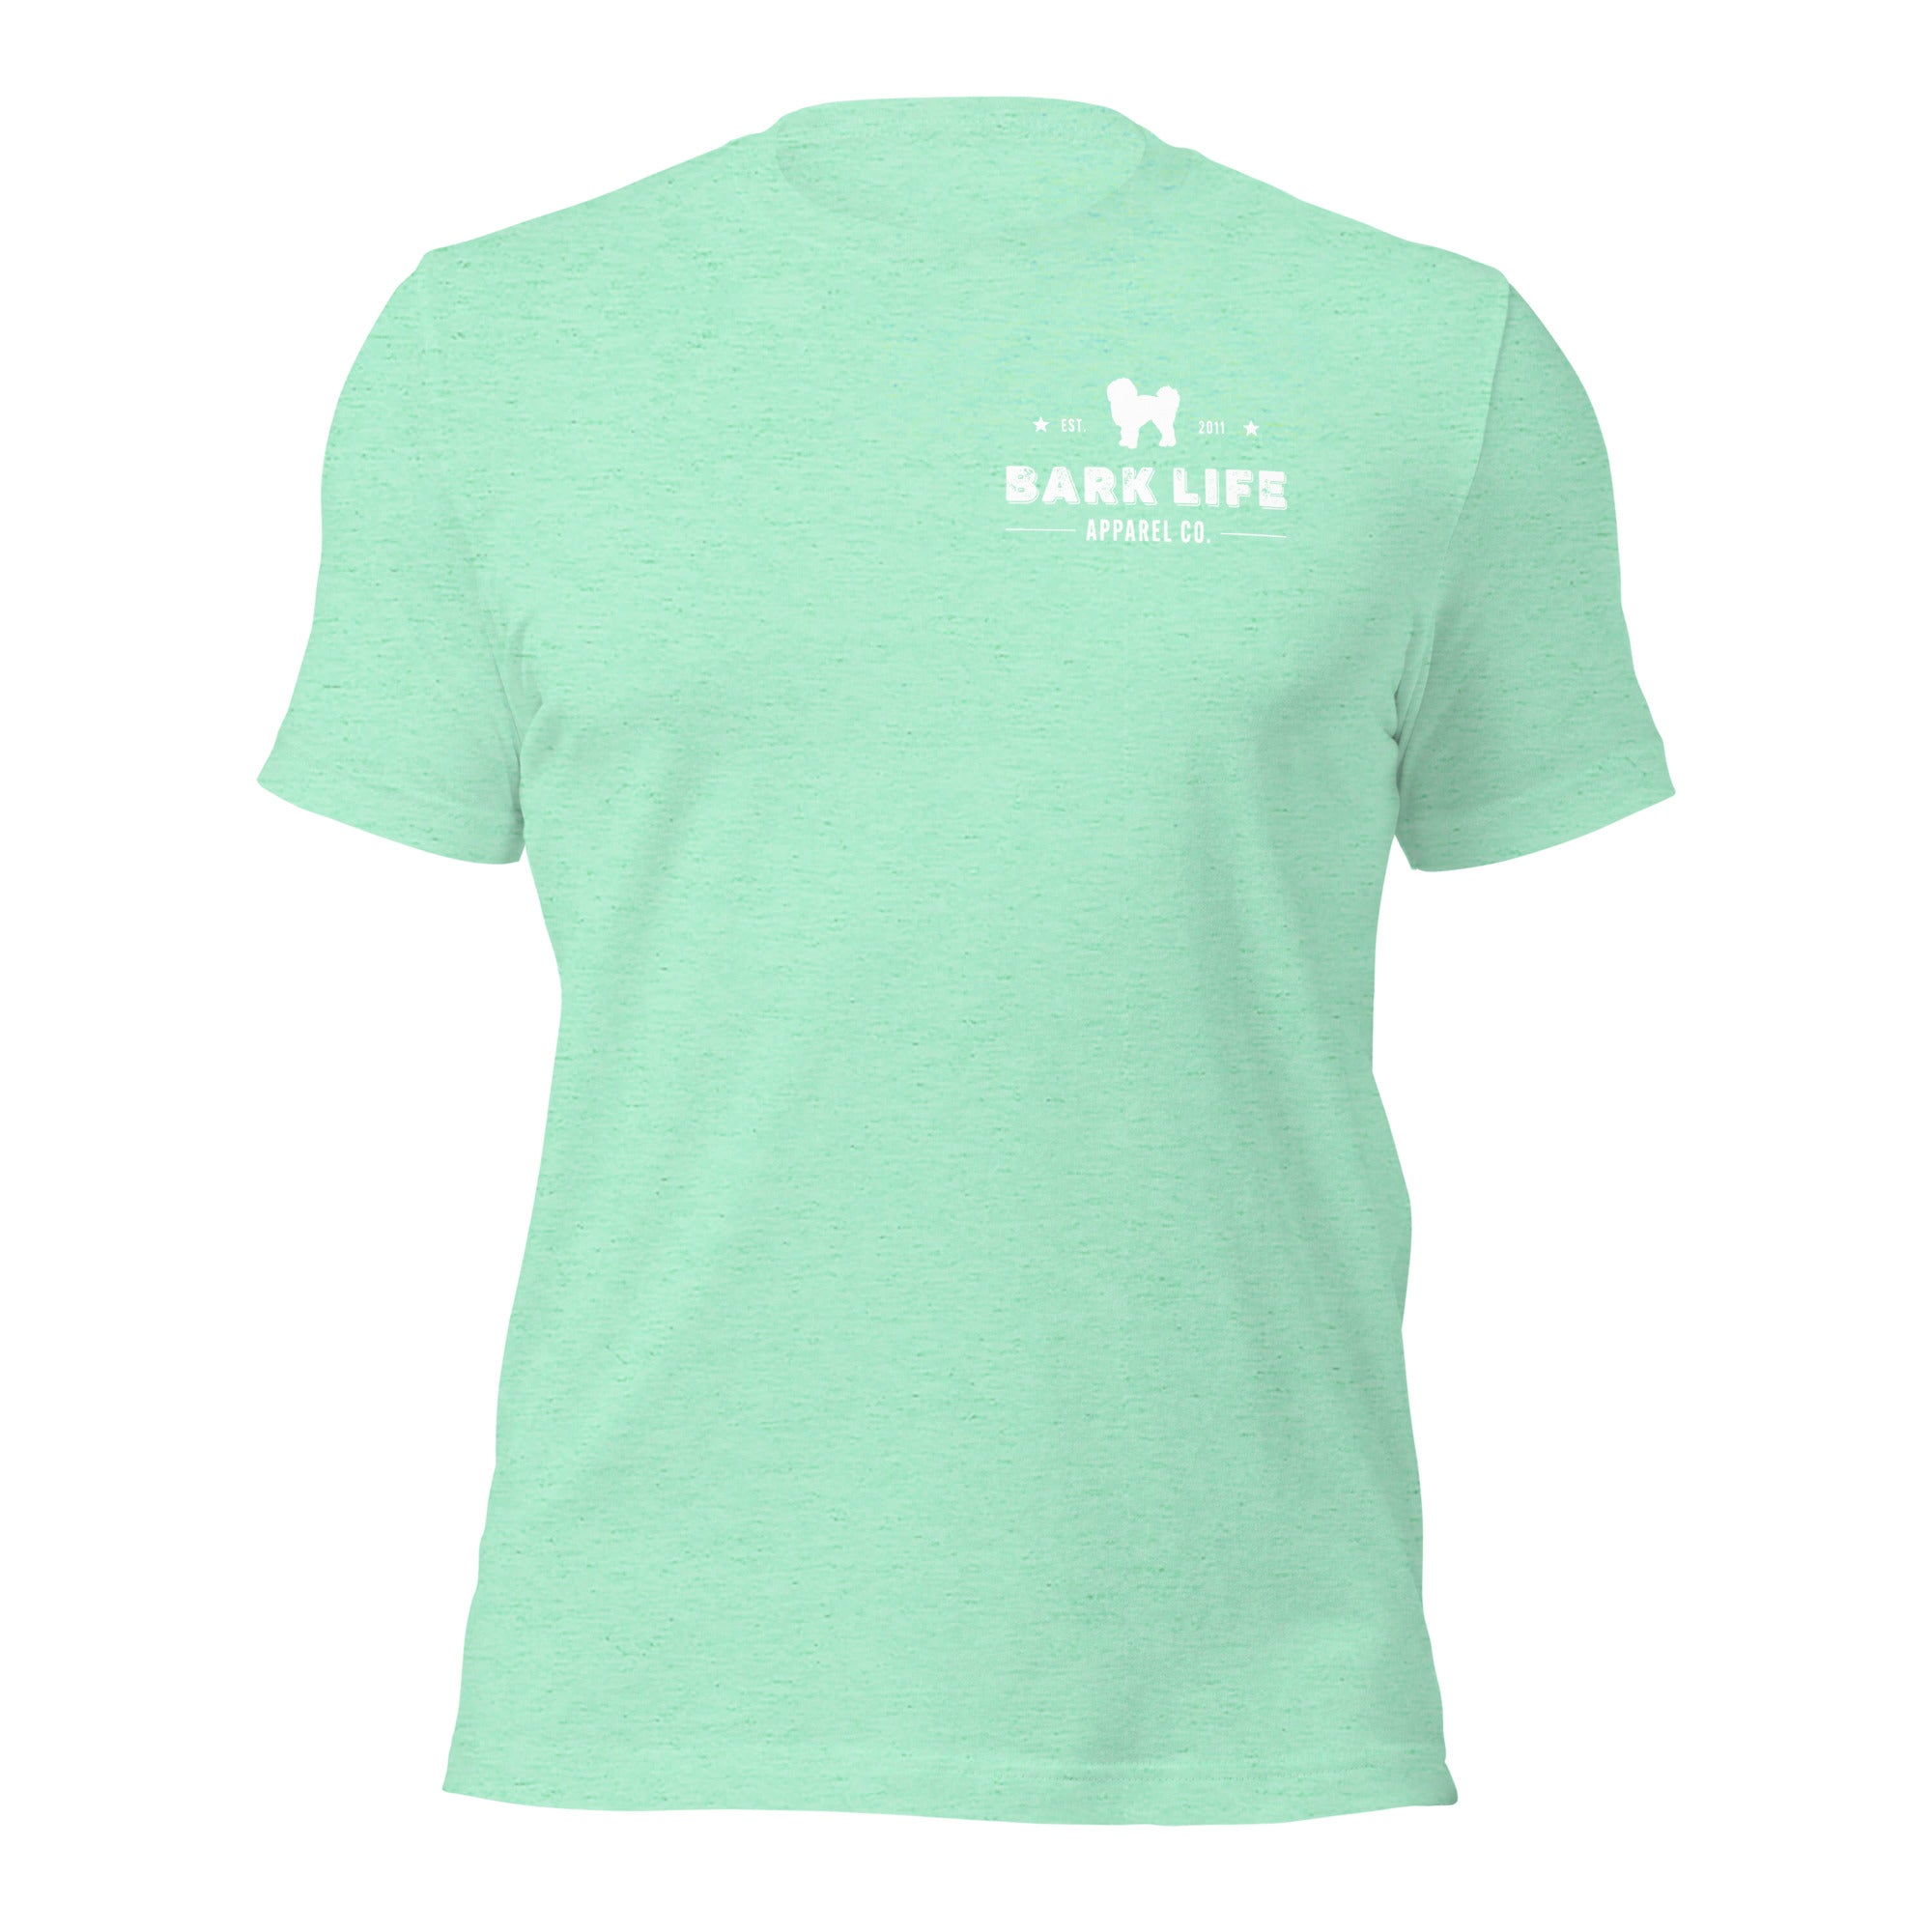 Havanese - Short Sleeve Cotton Tee Shirt